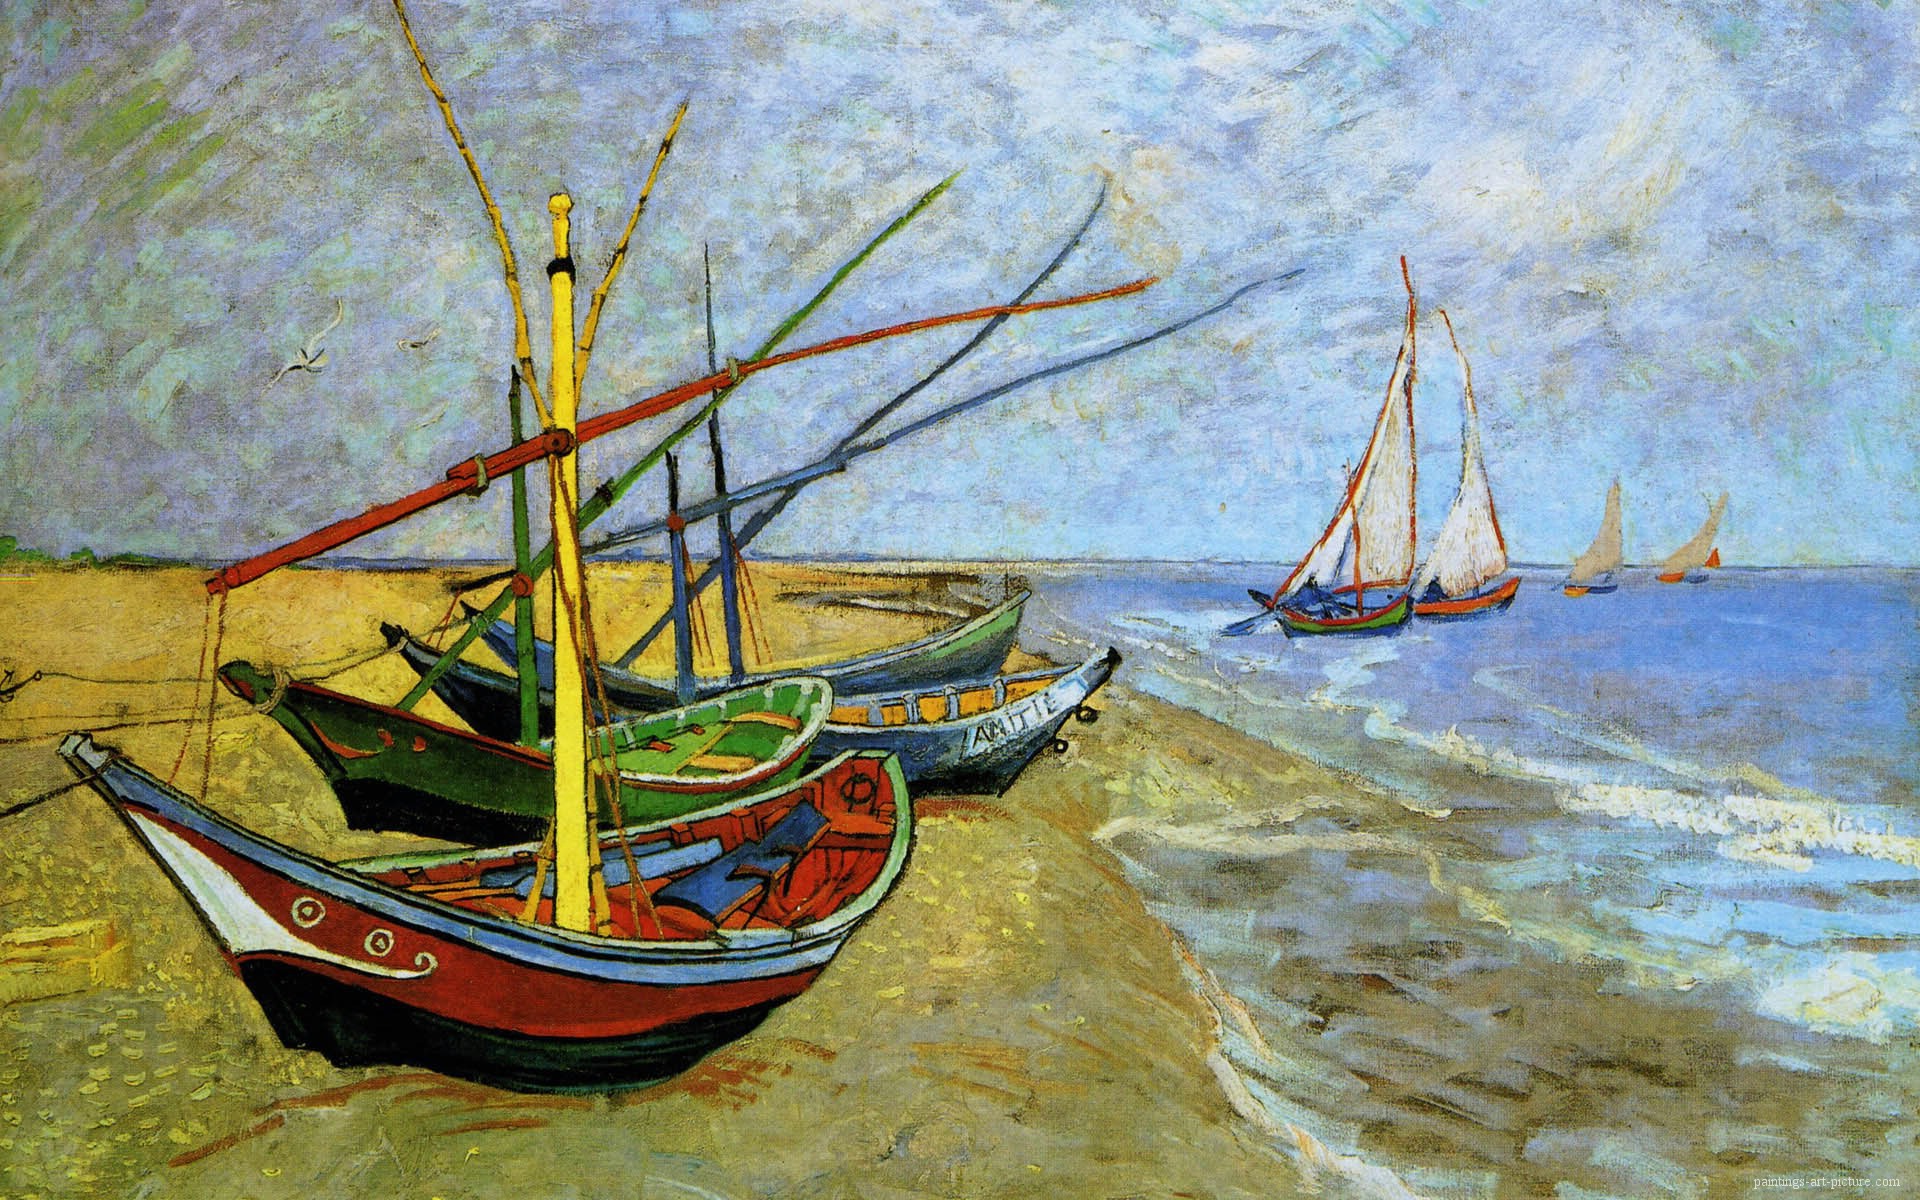 van gogh boat paintings free images